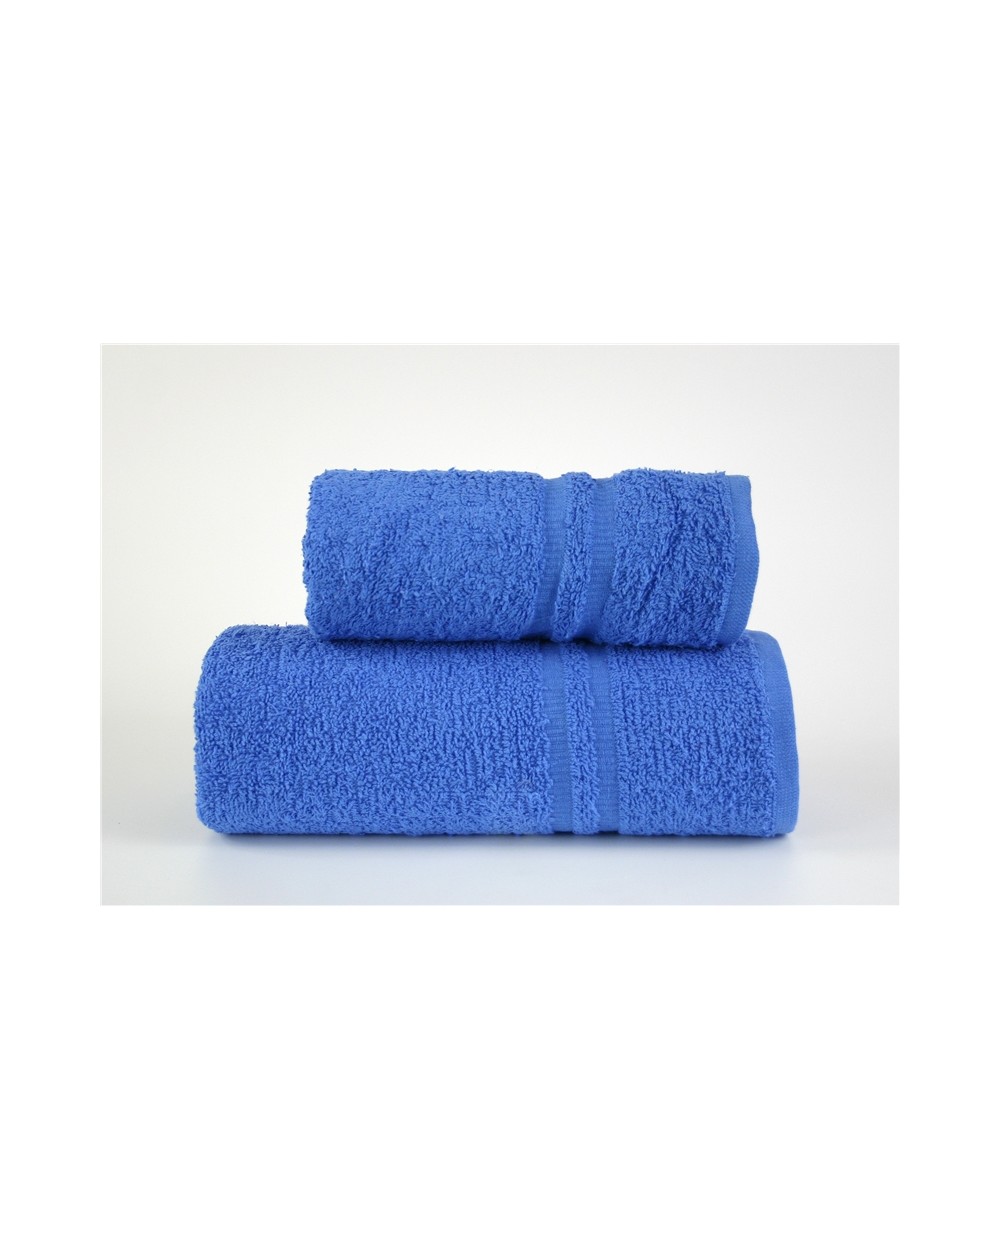 Ręcznik Junak New bawełna 70x140 niebieski